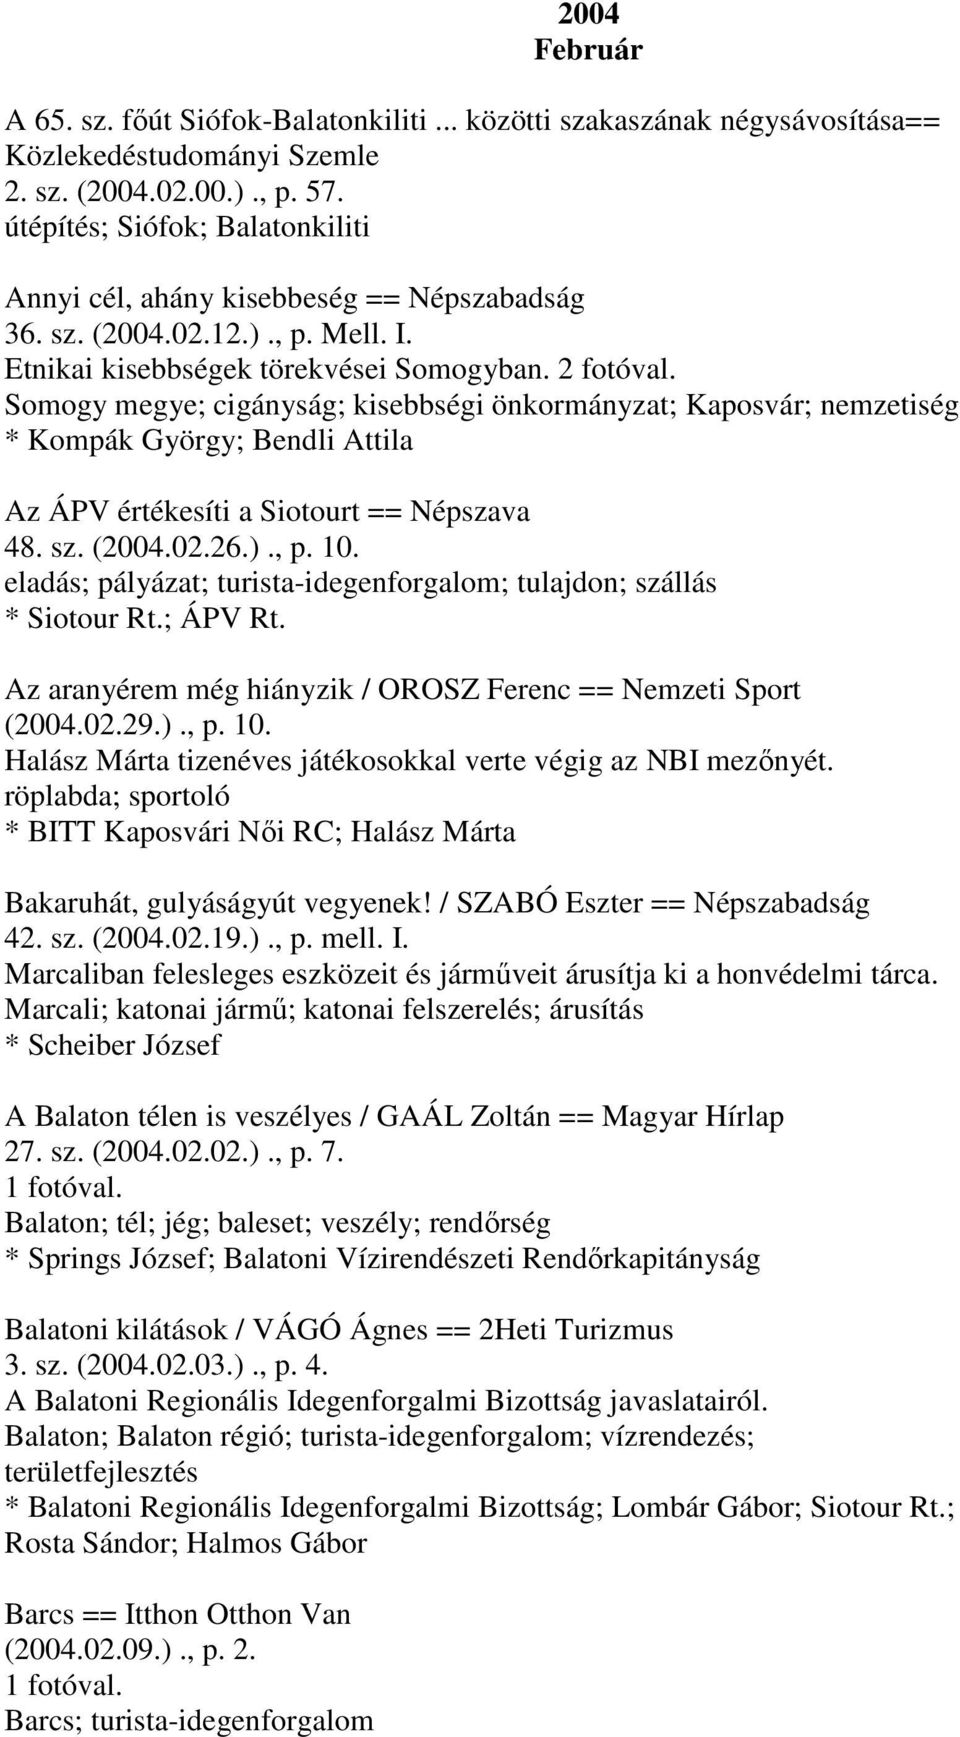 Somogy megye; cigányság; kisebbségi önkormányzat; Kaposvár; nemzetiség * Kompák György; Bendli Attila Az ÁPV értékesíti a Siotourt == Népszava 48. sz. (2004.02.26.)., p. 10.